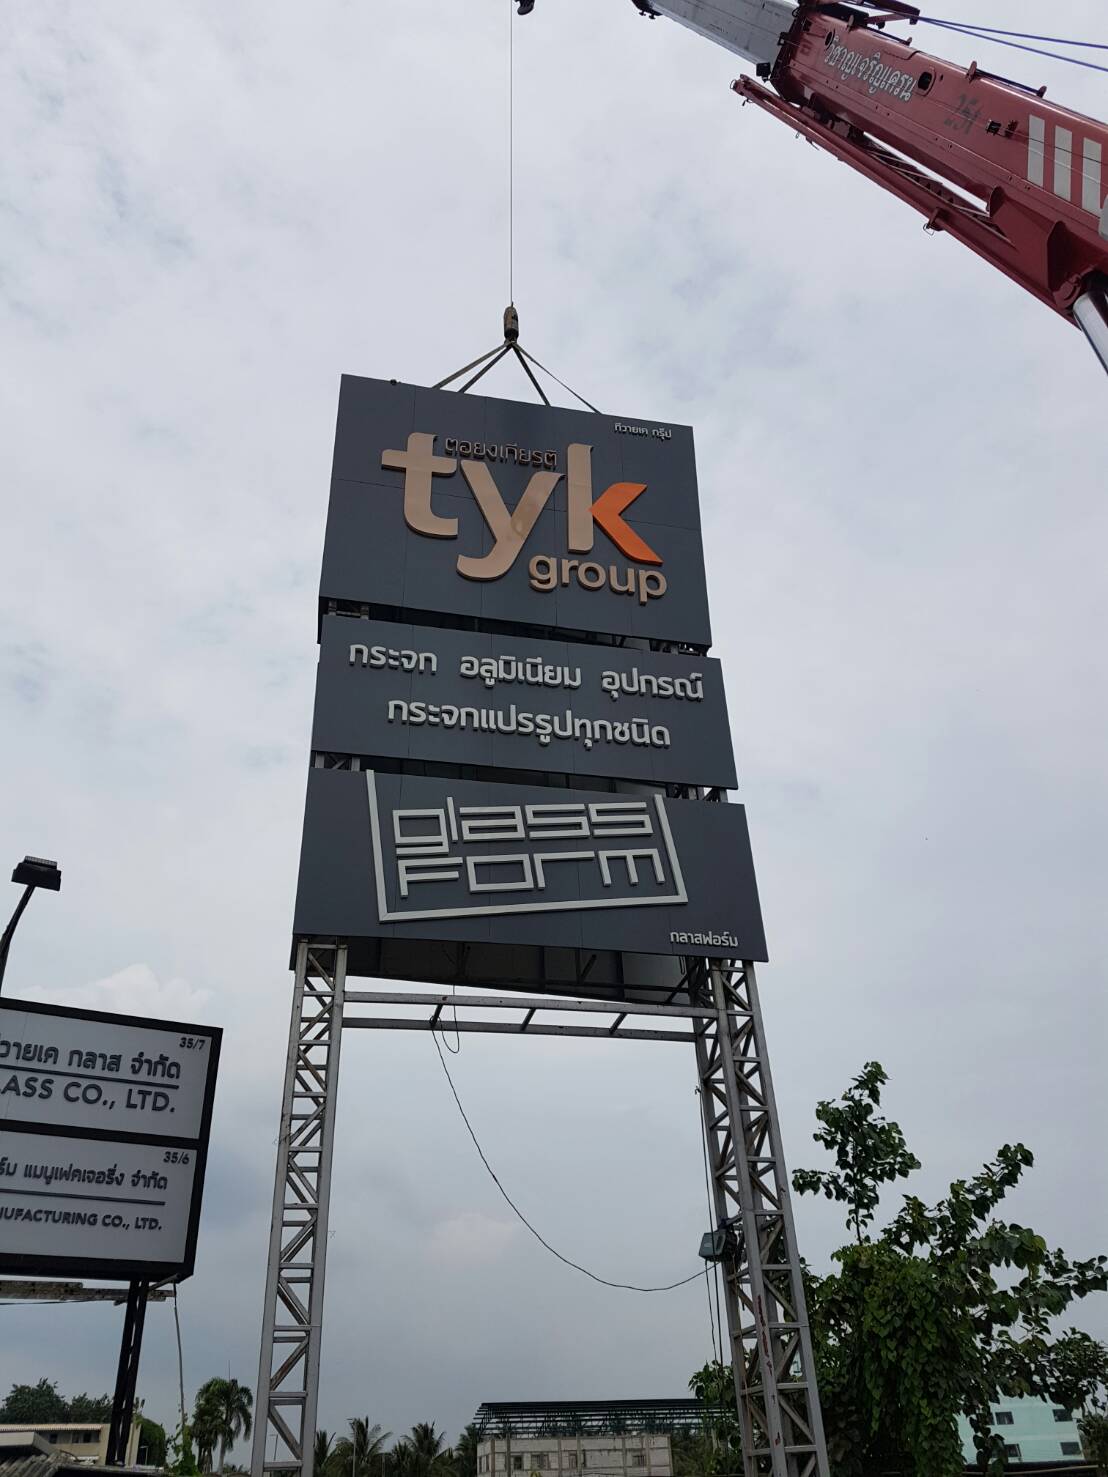 ทาวเวอร์หน้าบริษัท TYK Group ตอยงเกียรติ